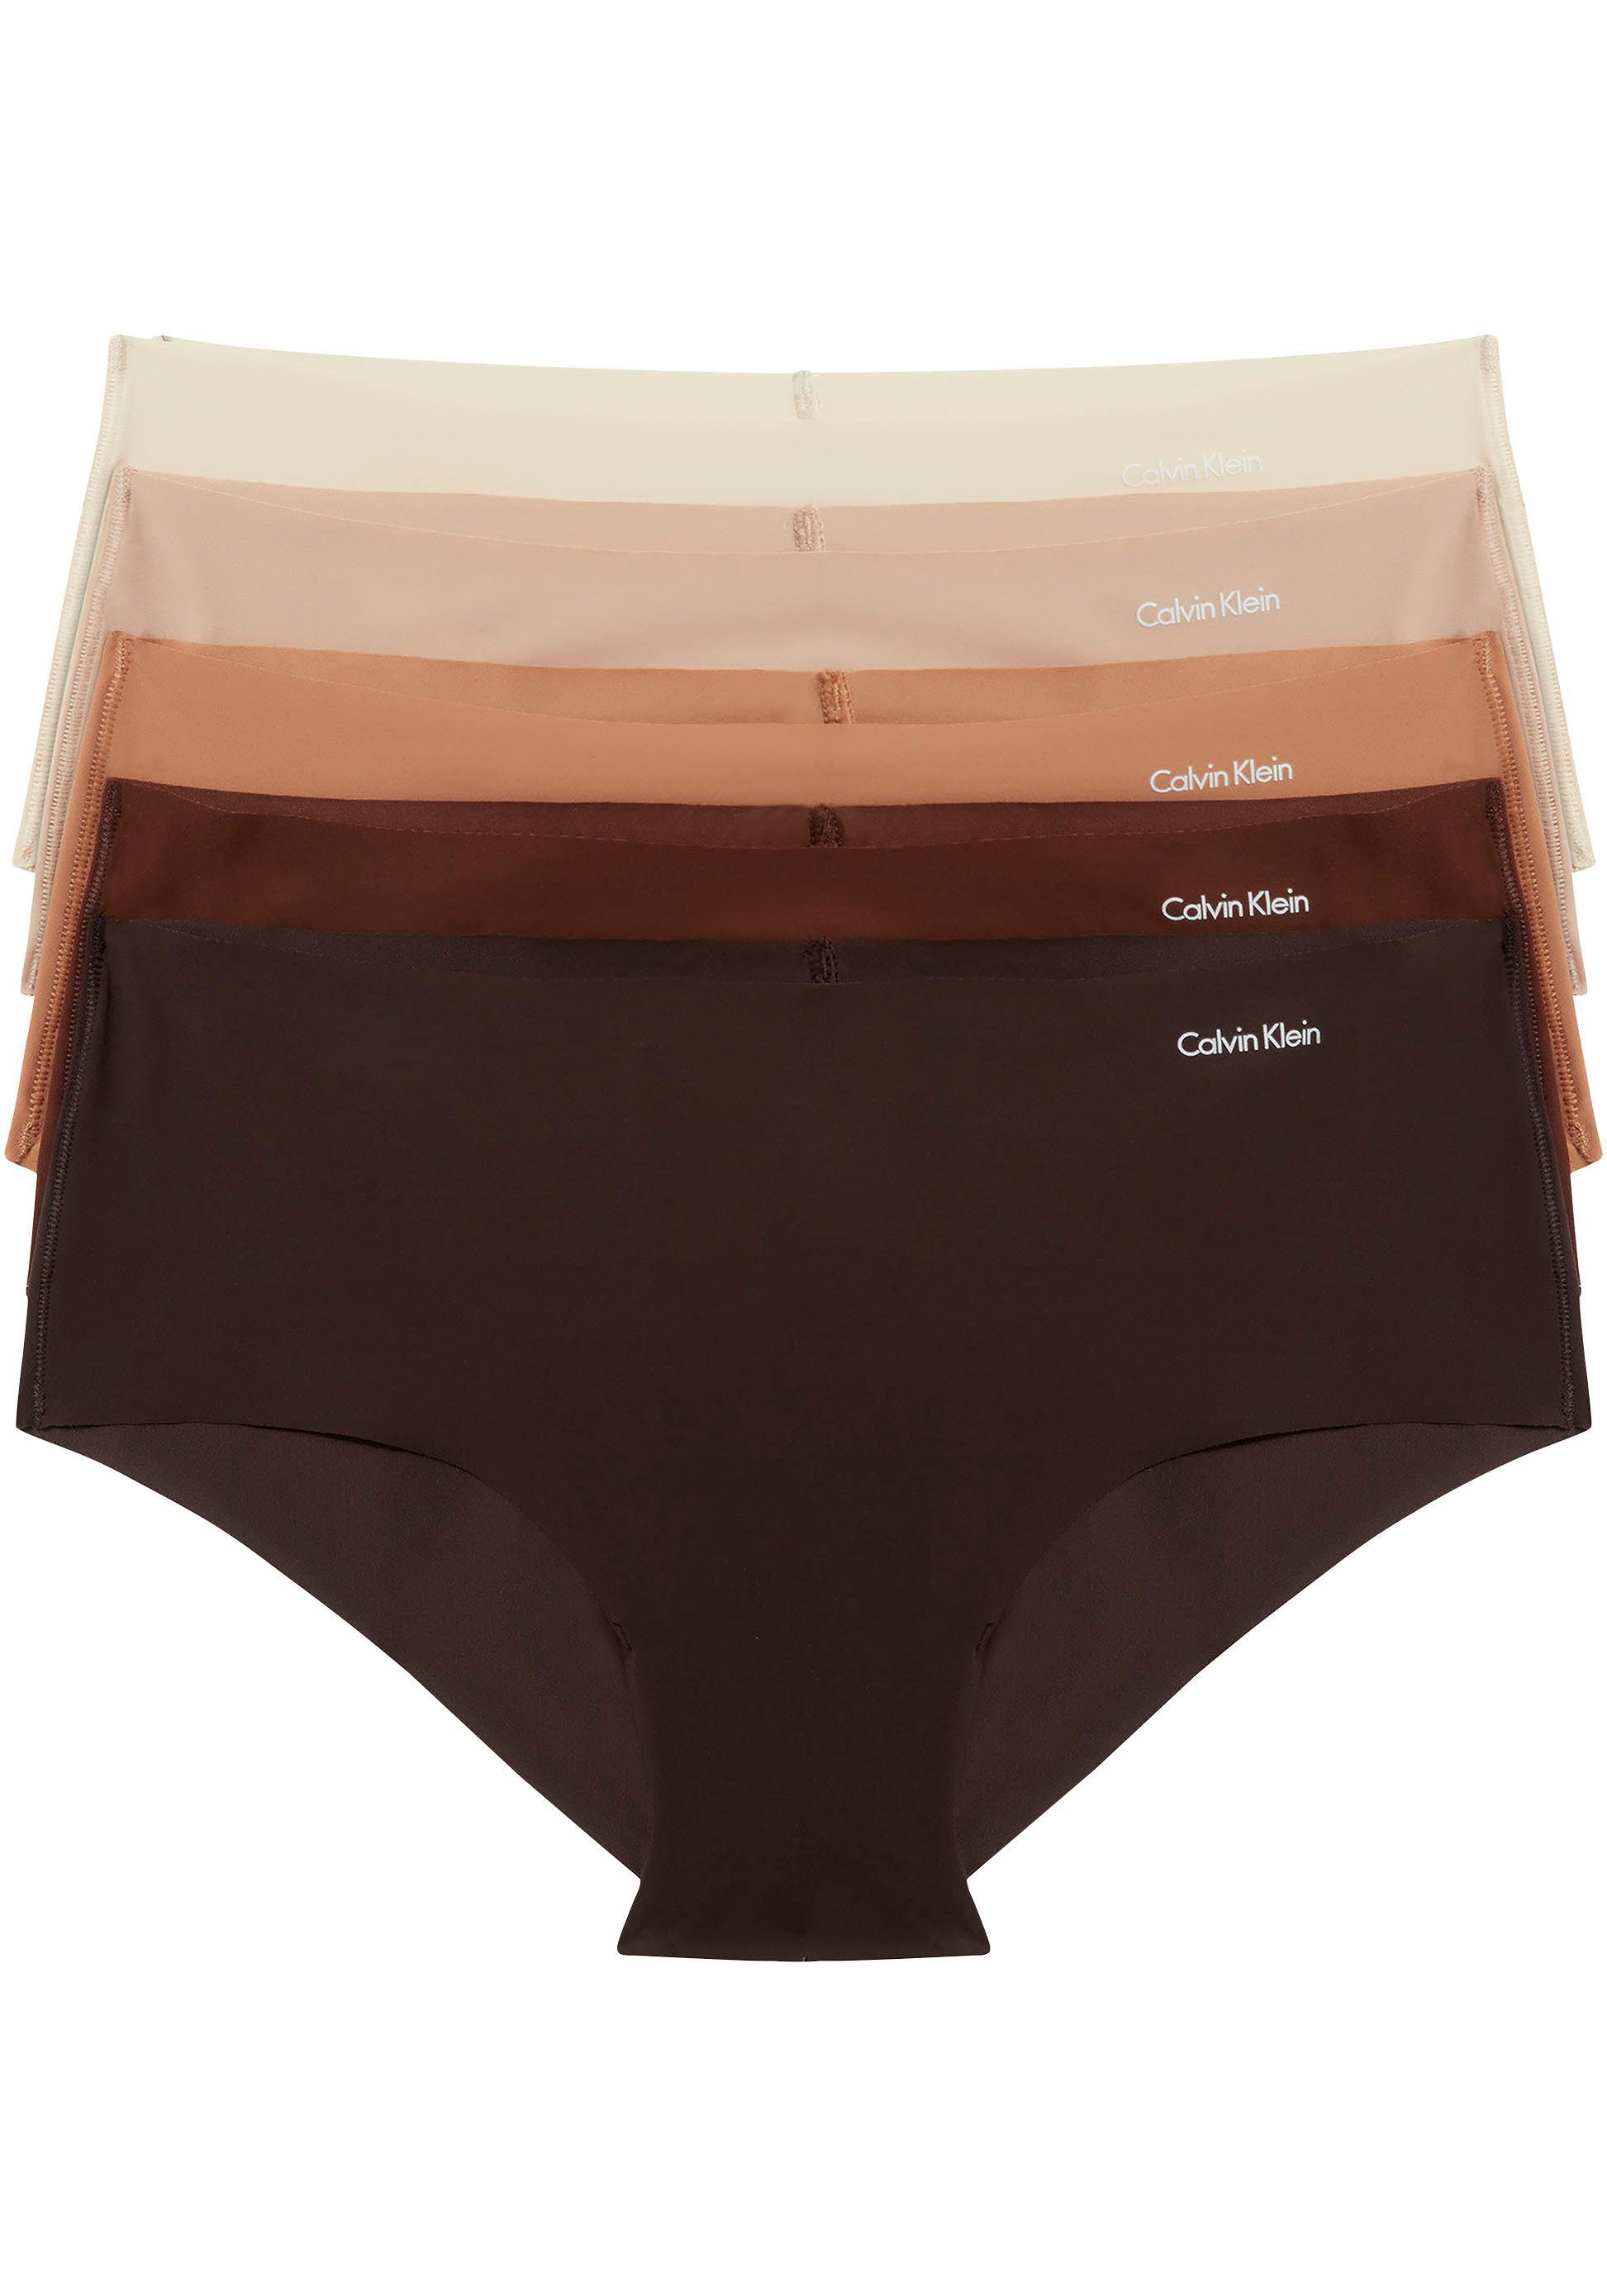 Aktuell beliebt Calvin Klein Underwear Bikinislip BIKINI mit Klein Calvin Markenlabel (Packung, 5PK 5er-Pack) 5-St